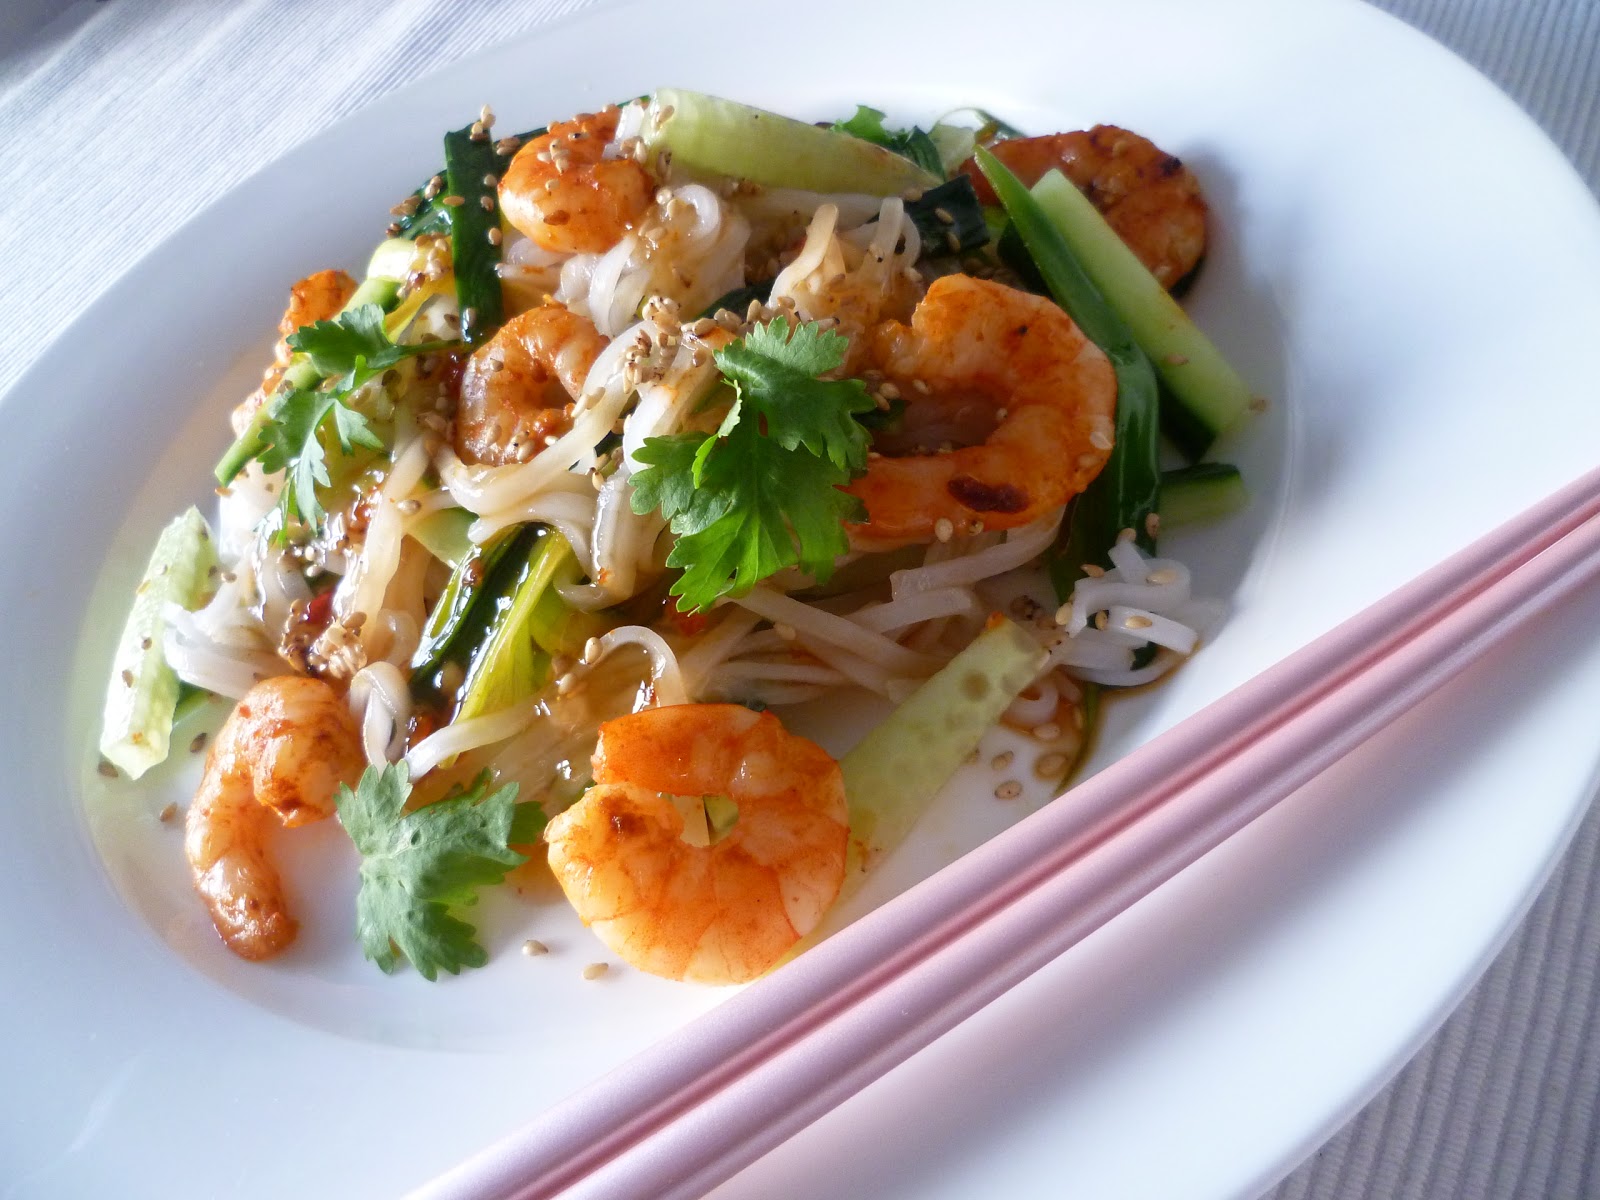 Thailändischer Reisnudelsalat mit Garnelen - Nicest Things